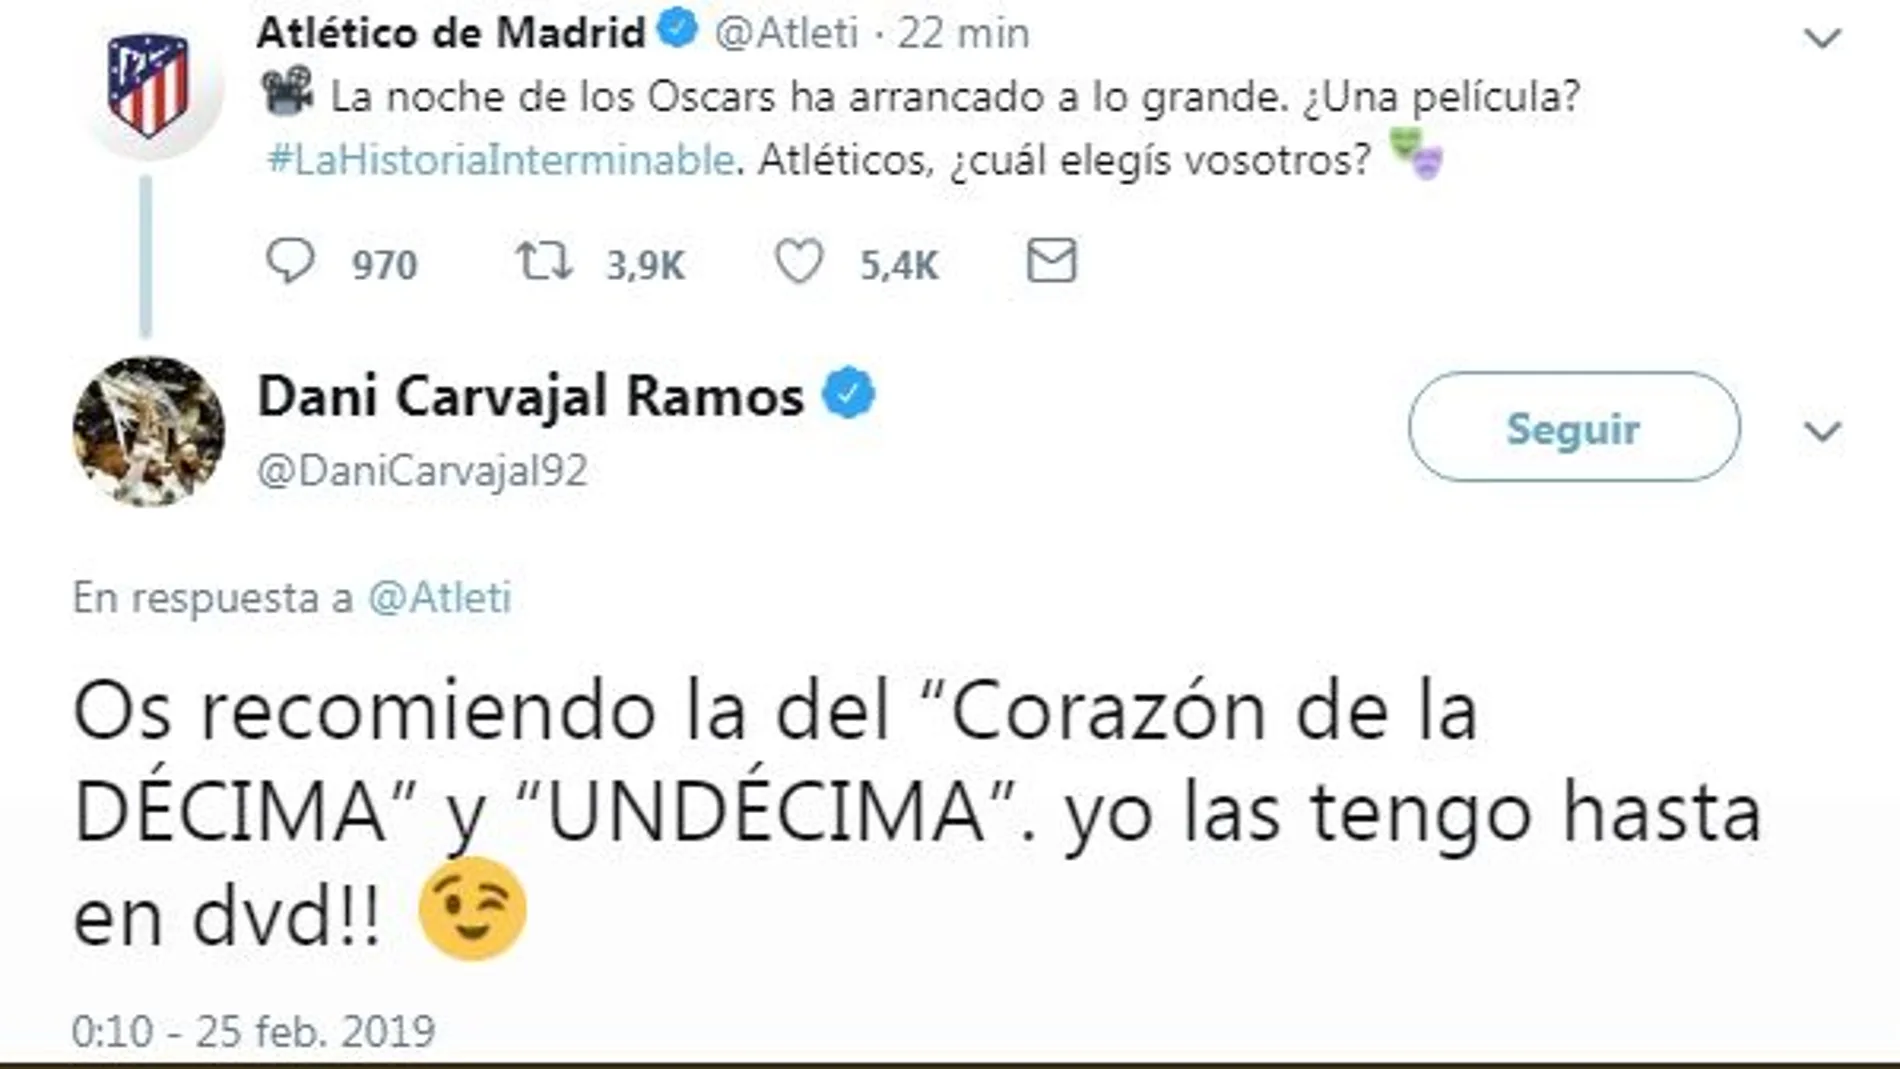 Carvajal contesta al Atlético en Twitter: “Os recomiendo la del ‘Corazón de la Décima’ y la ‘Undécima’”